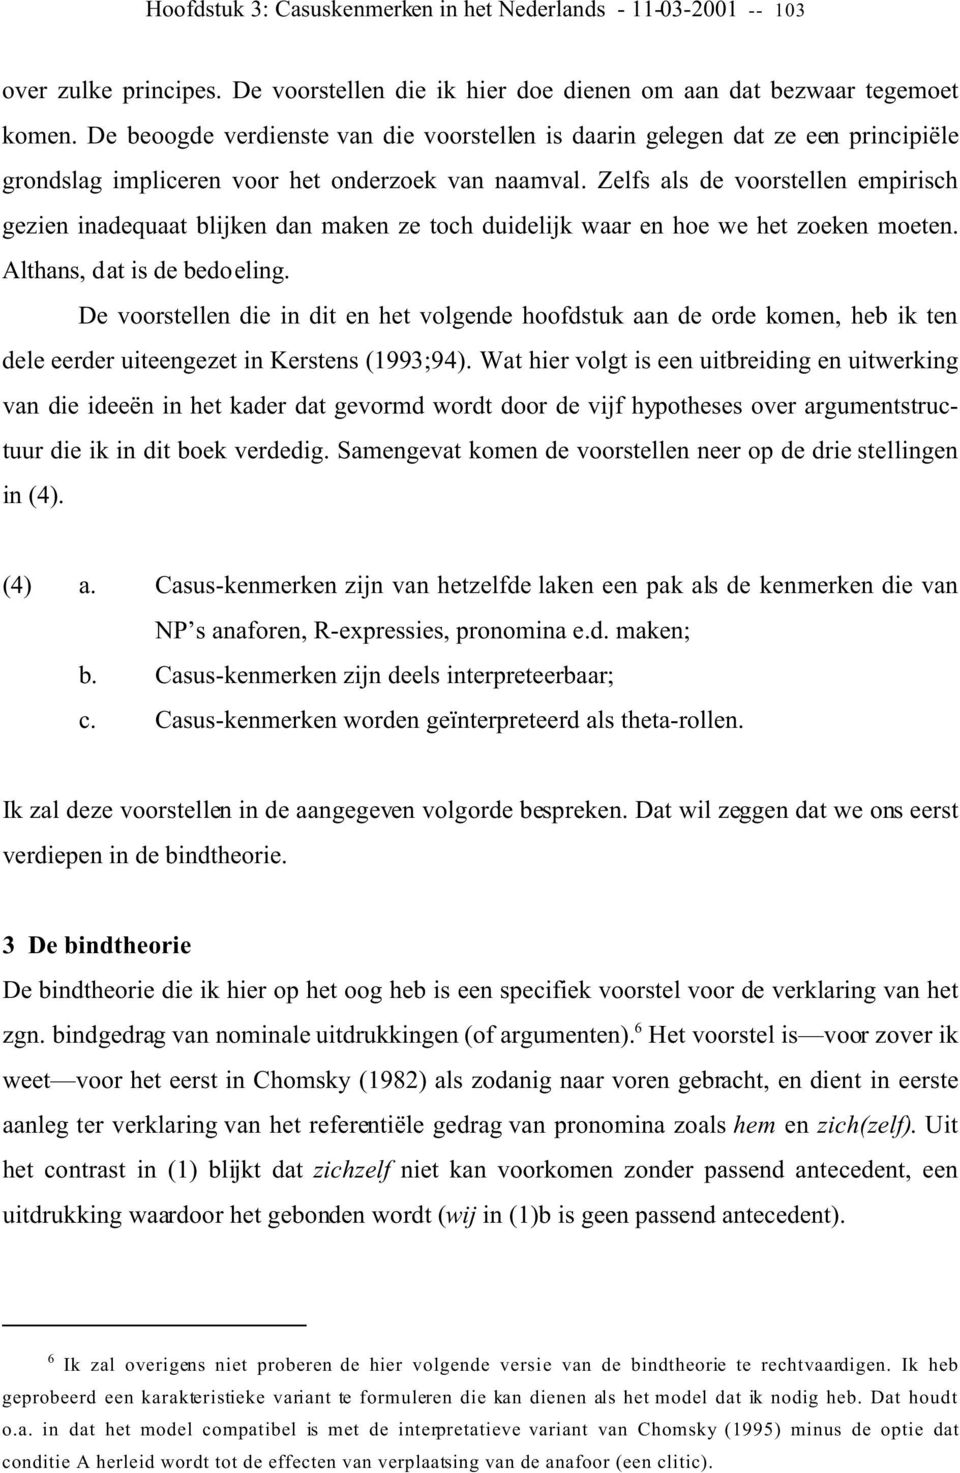 Casuskenmerken in het Nederlands - PDF Gratis download